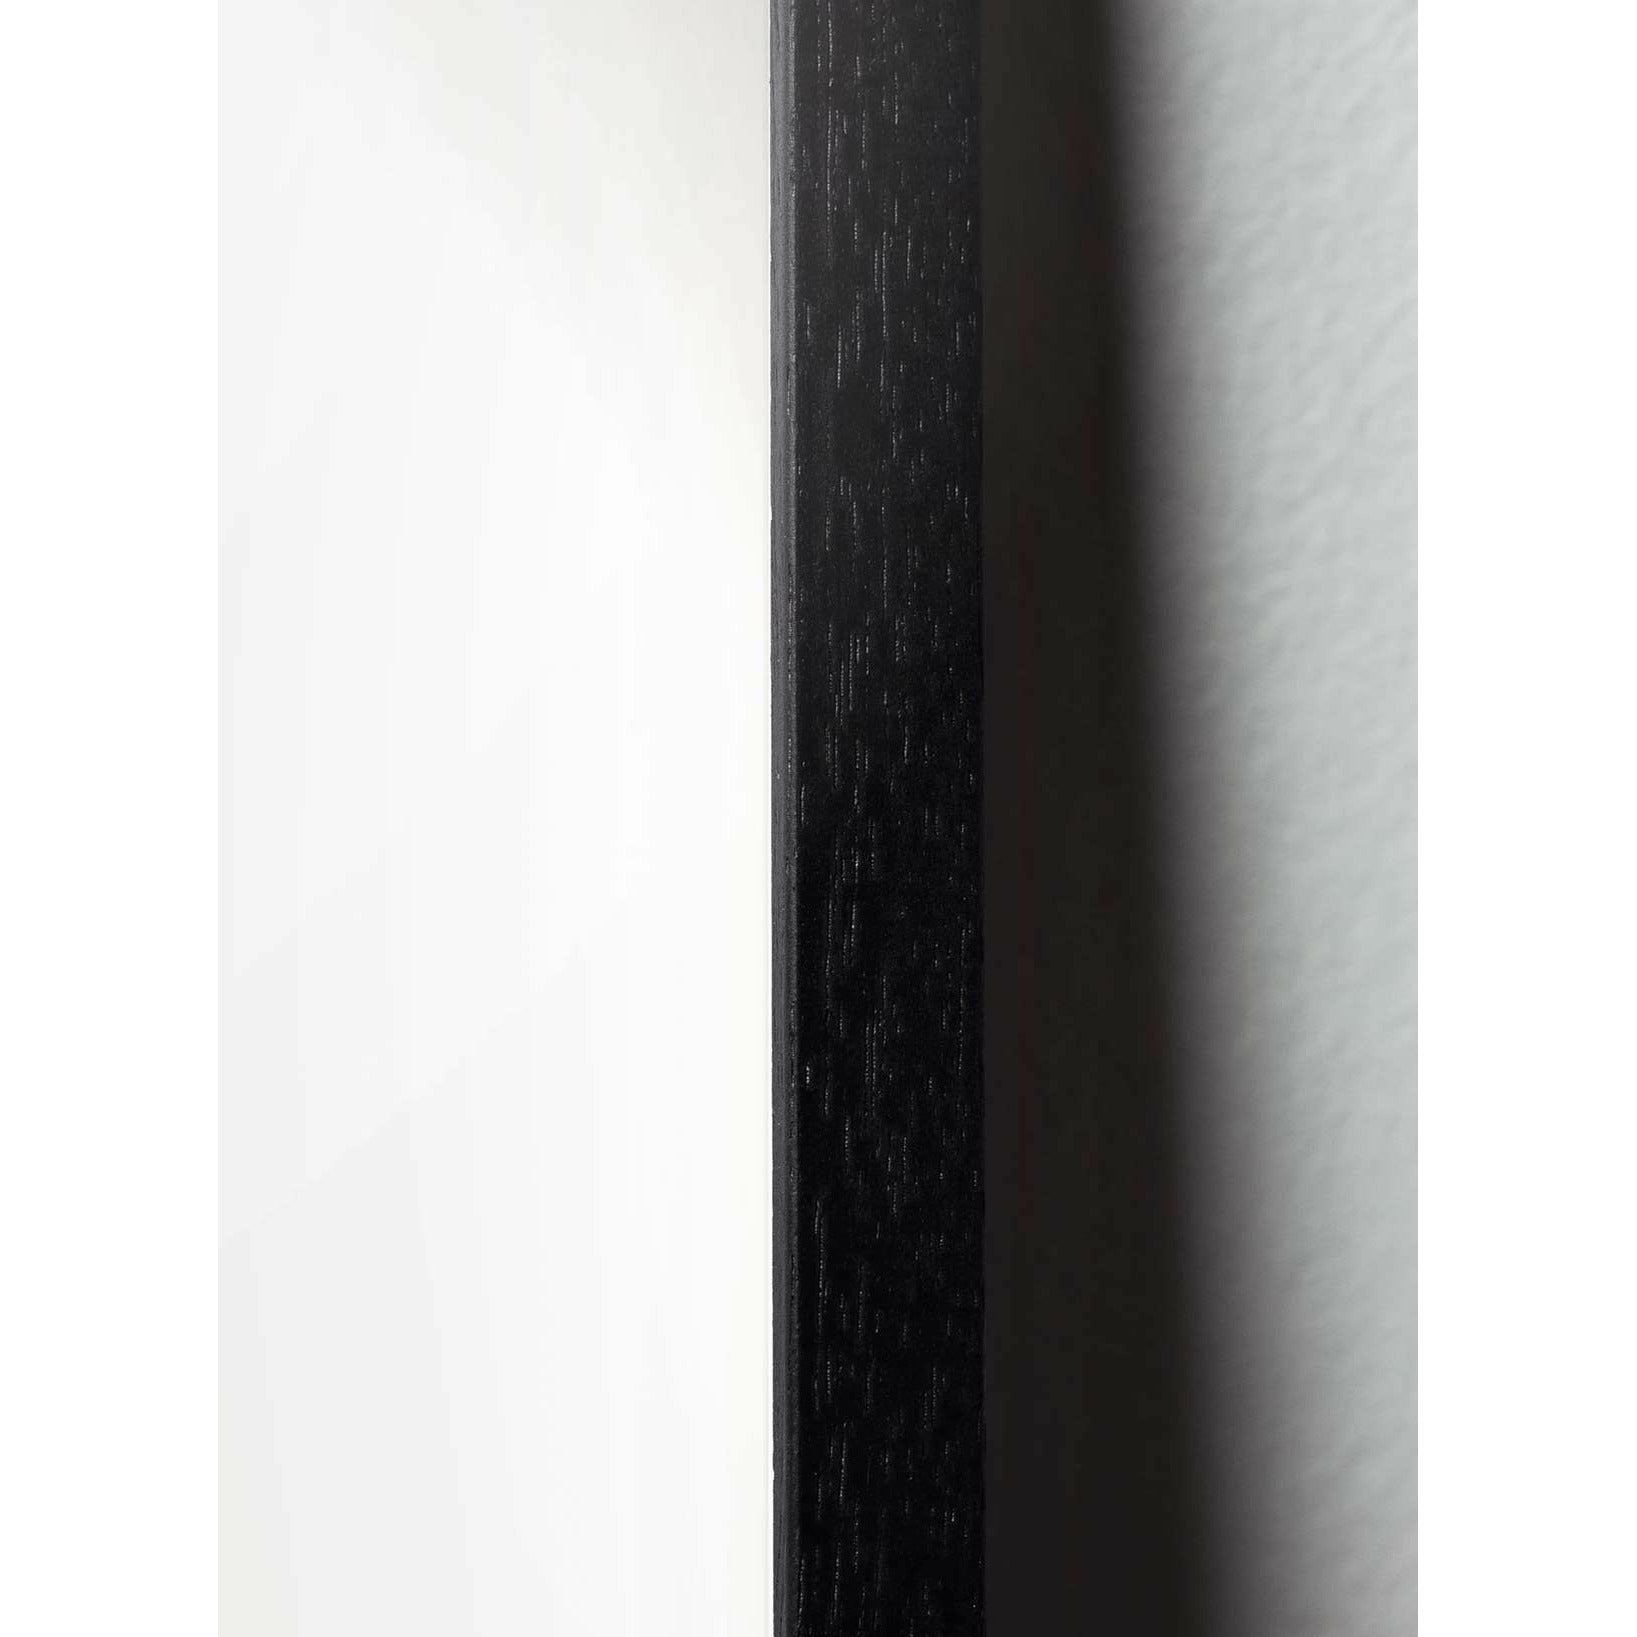 Plakat linii kropli pomysłu, rama w czarnym lakierowanym drewnie A5, białe tło